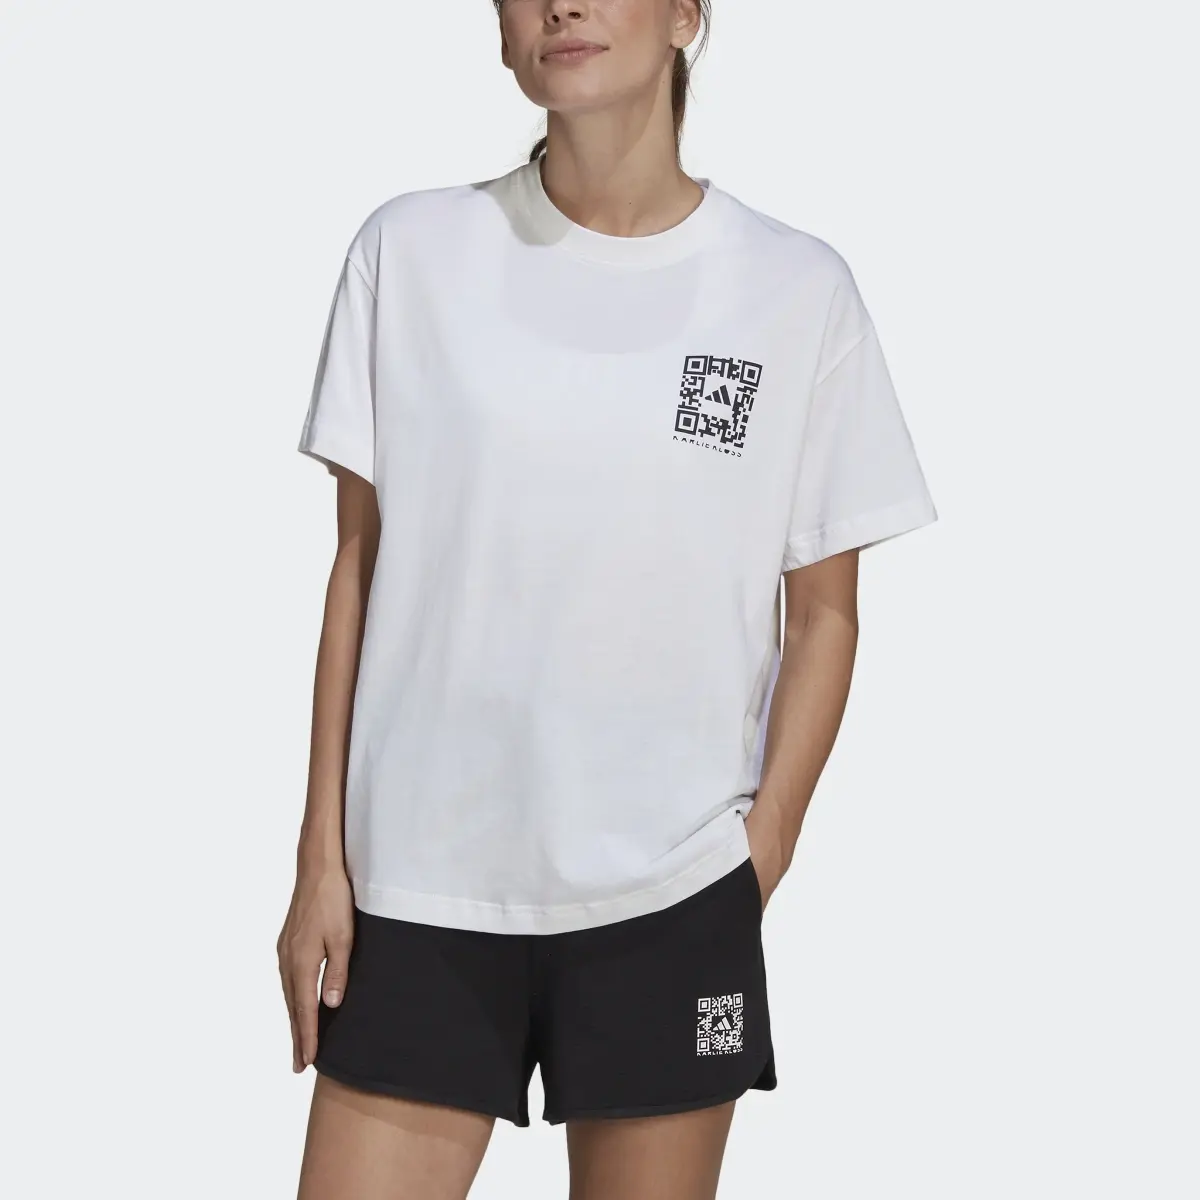 Adidas x Karlie Kloss Crop T-Shirt. 1